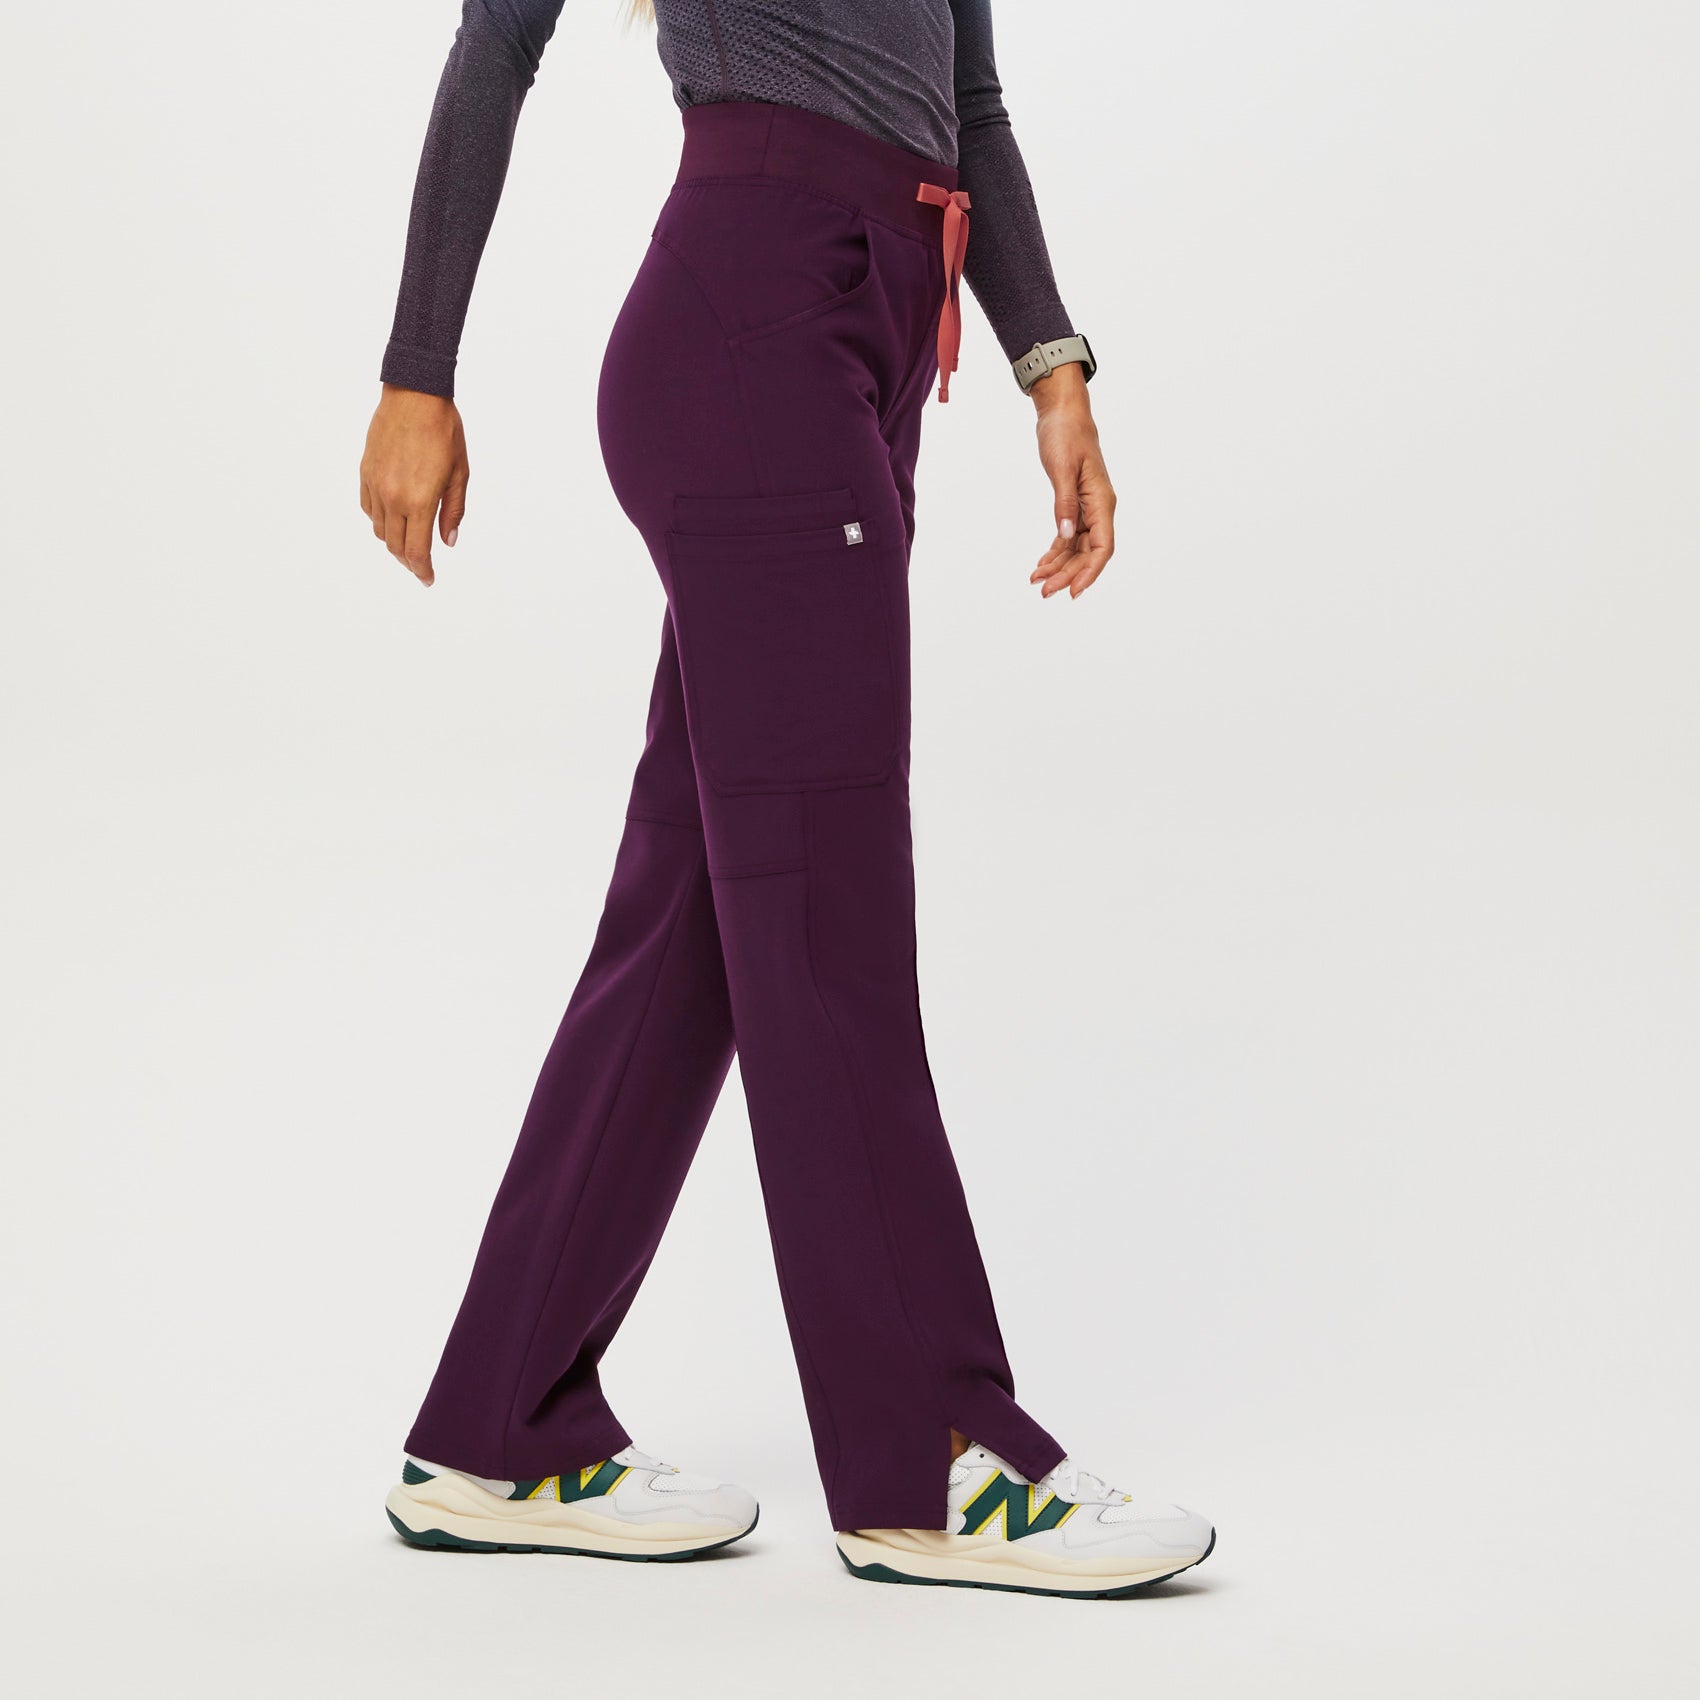 Purple Pants Outfits | 3d-mon.com